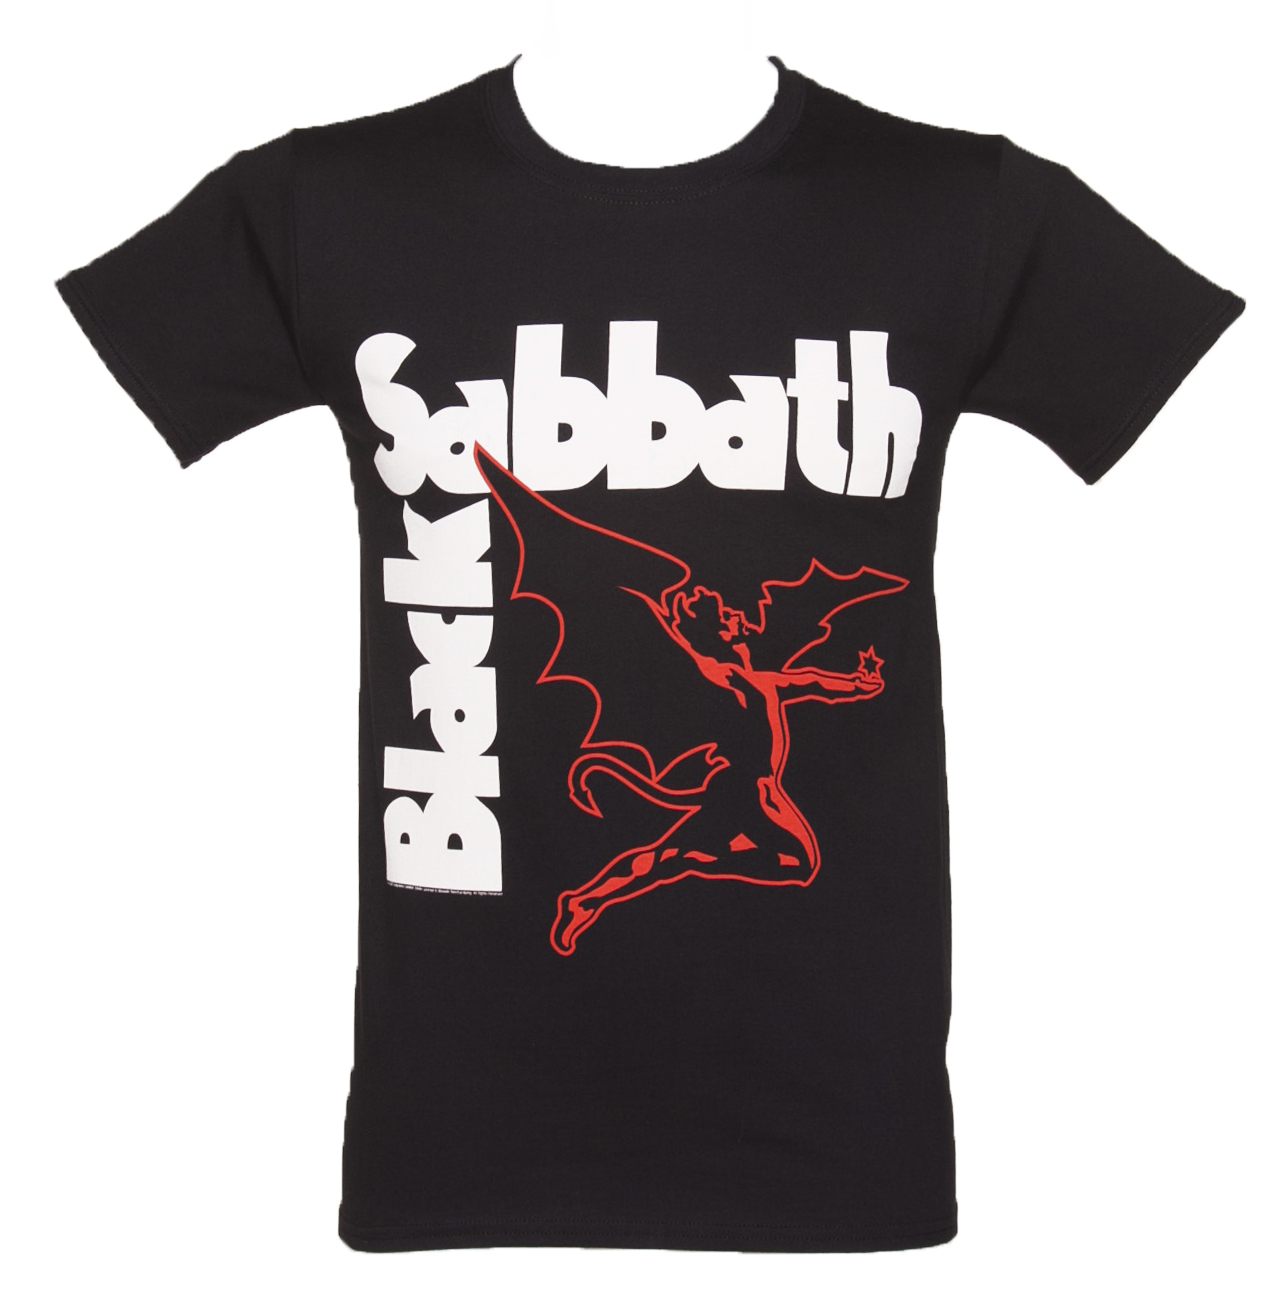 Mens Black Sabbath Creature T-Shirt